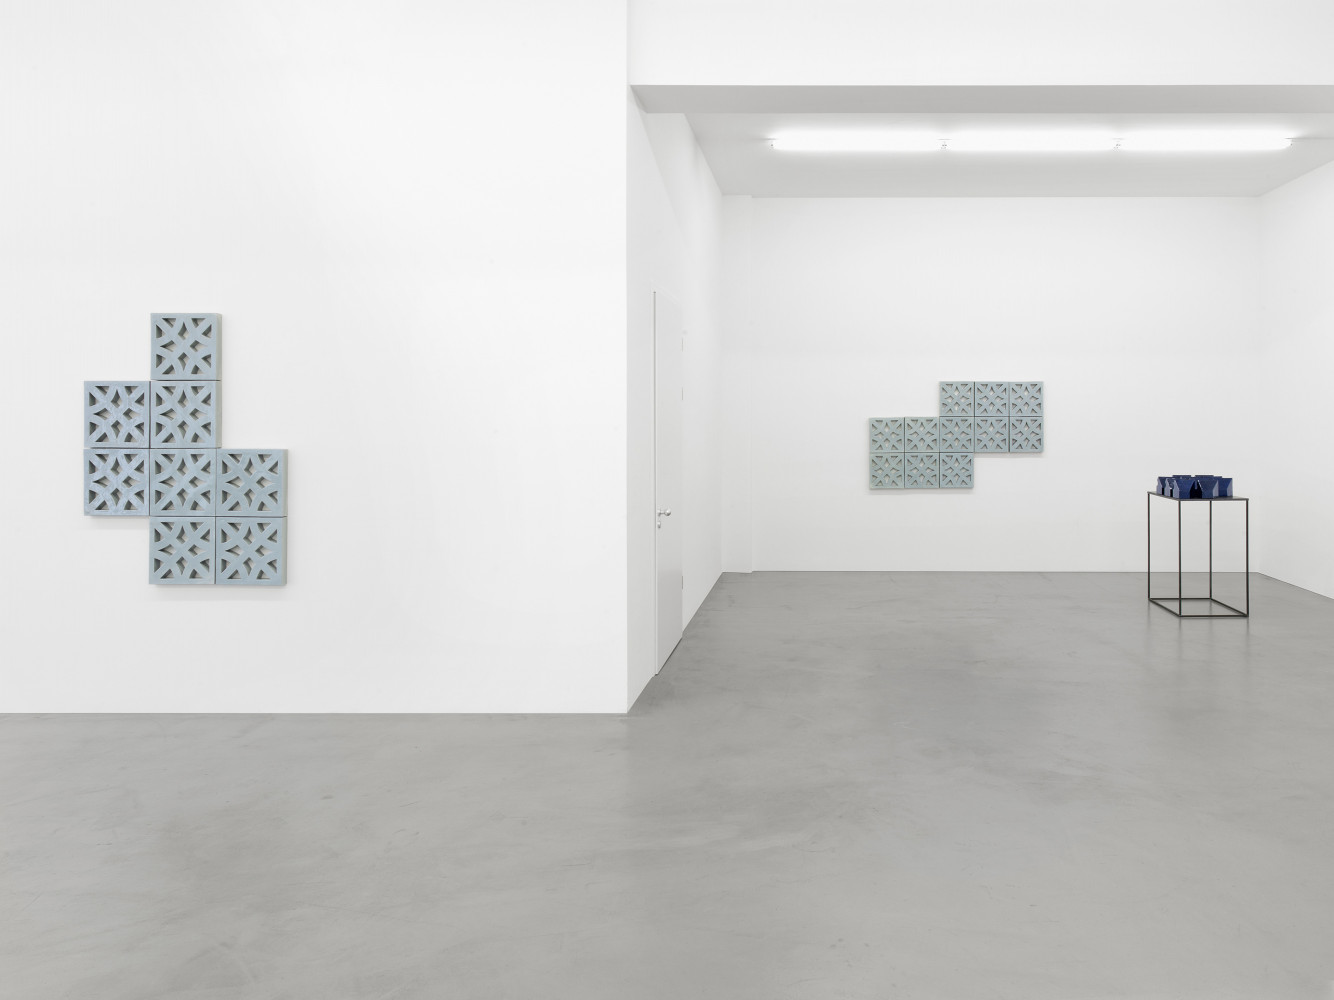 Bettina Pousttchi, Installation view, Buchmann Galerie, 2016